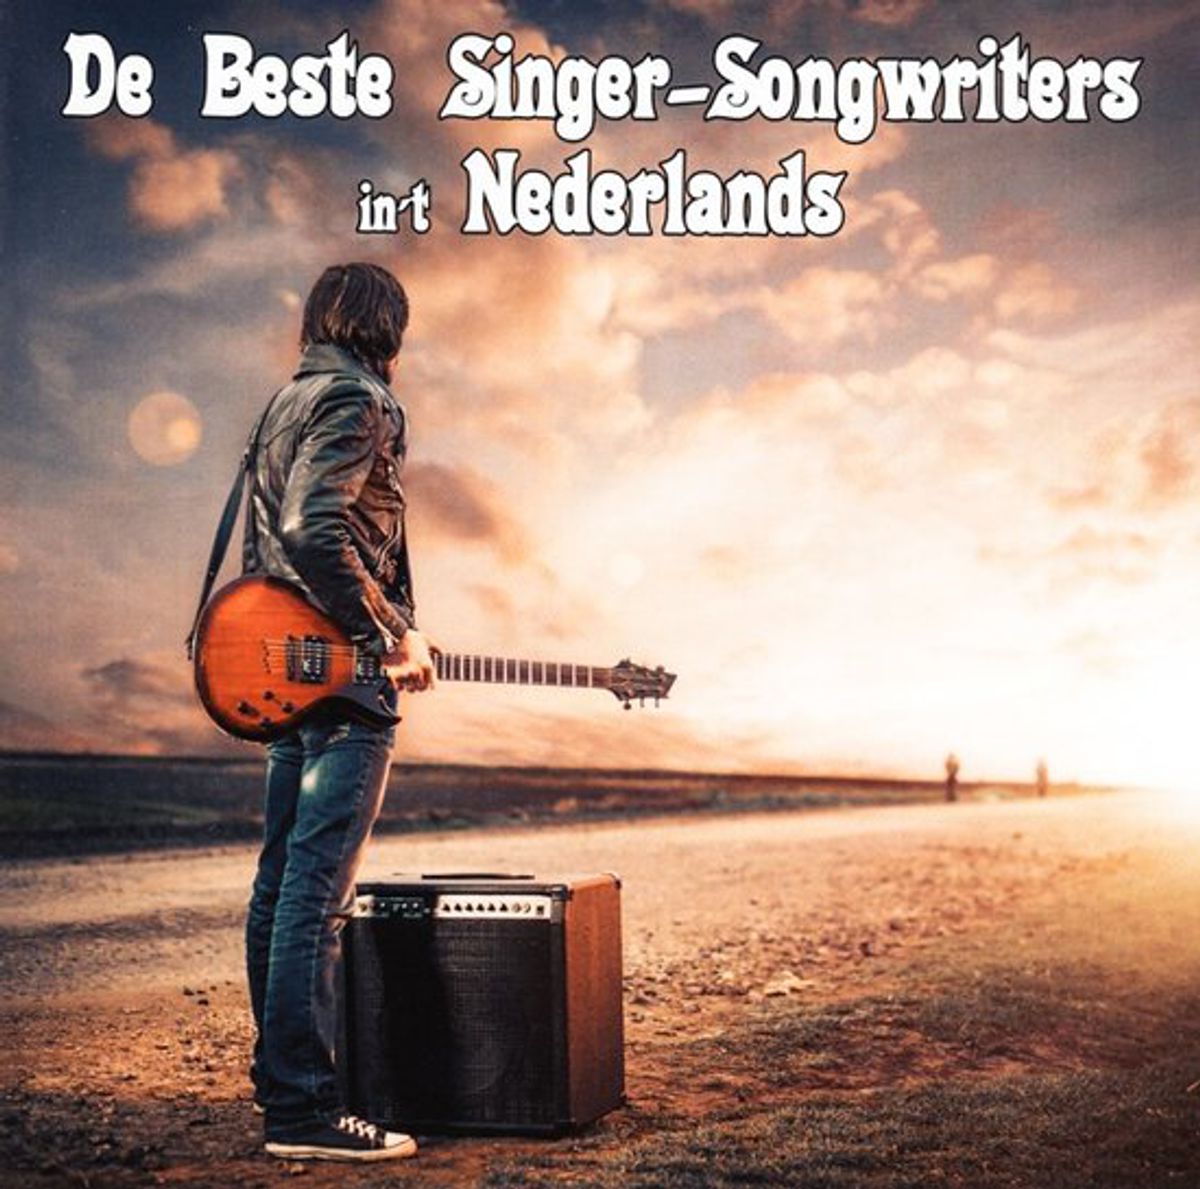 De Beste Singer-Songwriters in 't Nederlands